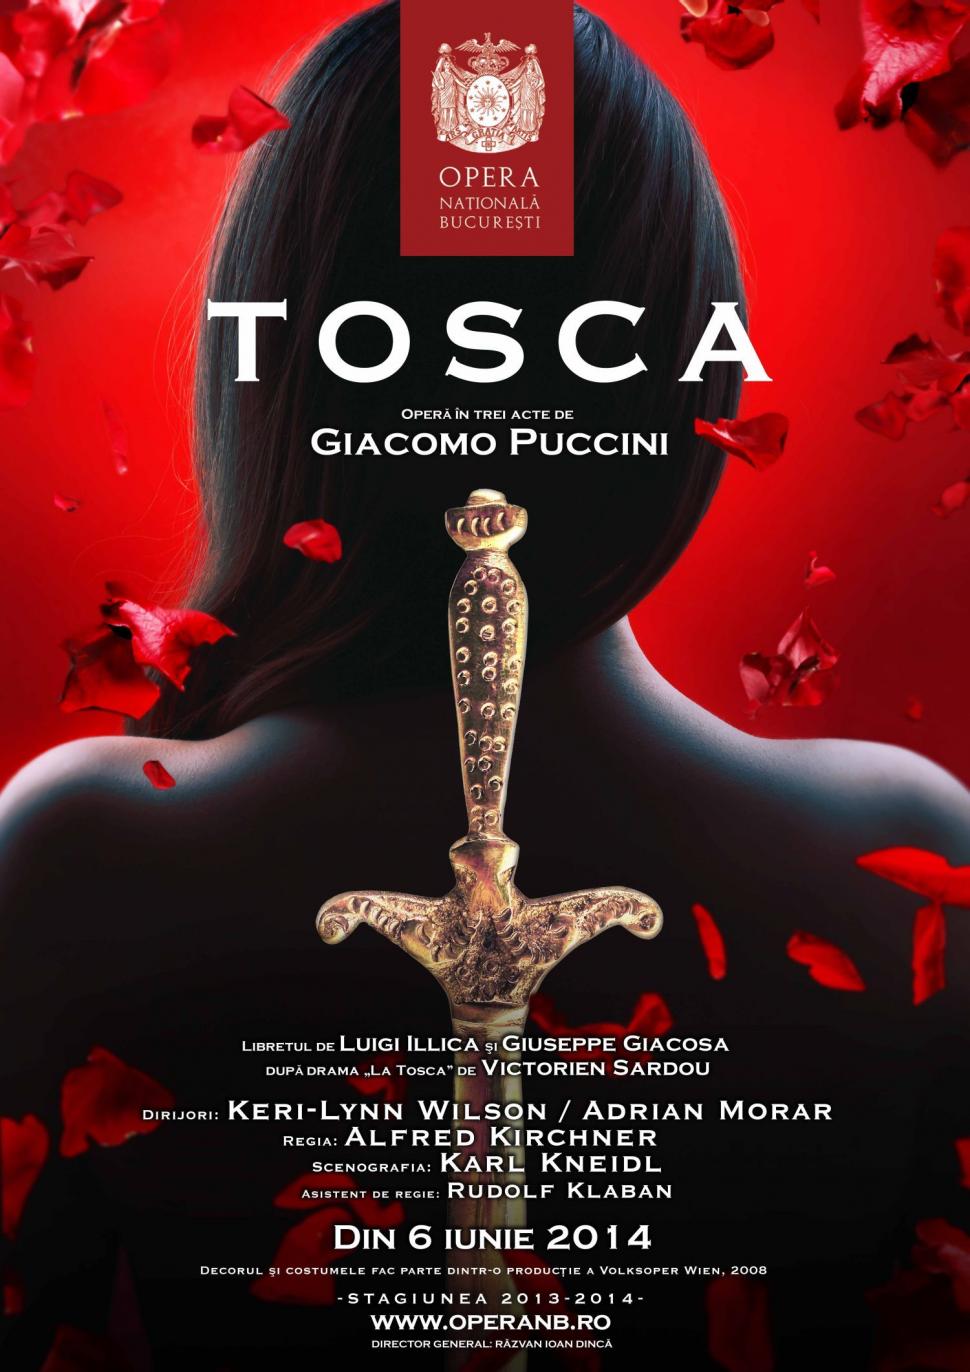 PREMIERĂ. TOSCA, de Giacomo Puccini, la Opera Naţională Bucureşti